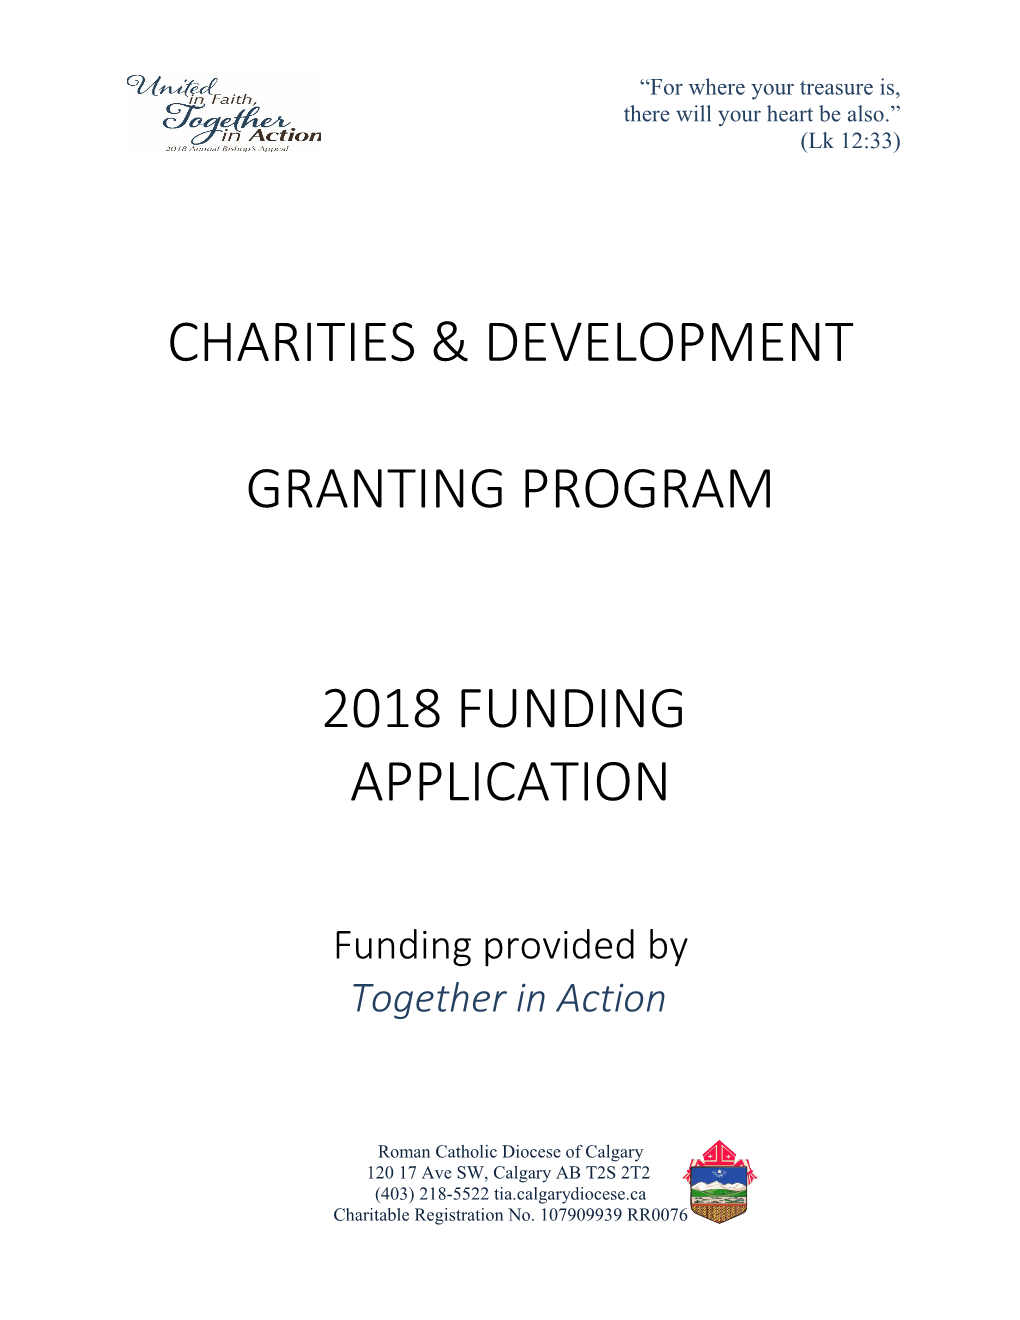 Charities & Development